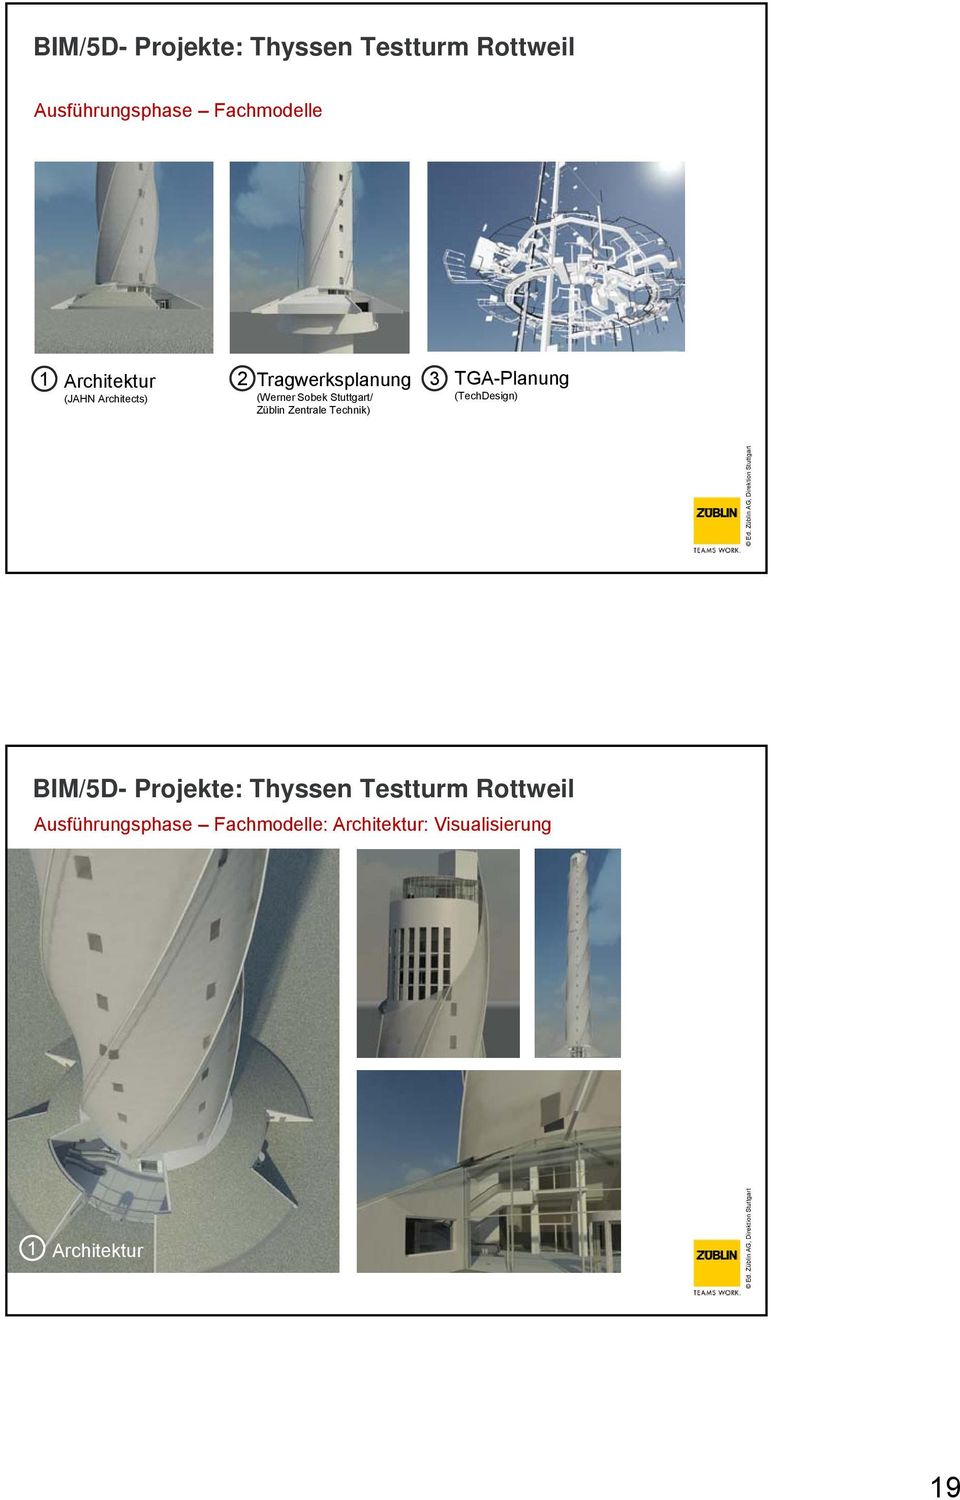 Zentrale Technik) TGA-Planung (TechDesign) BIM/5D- Projekte: Thyssen Testturm Rottweil